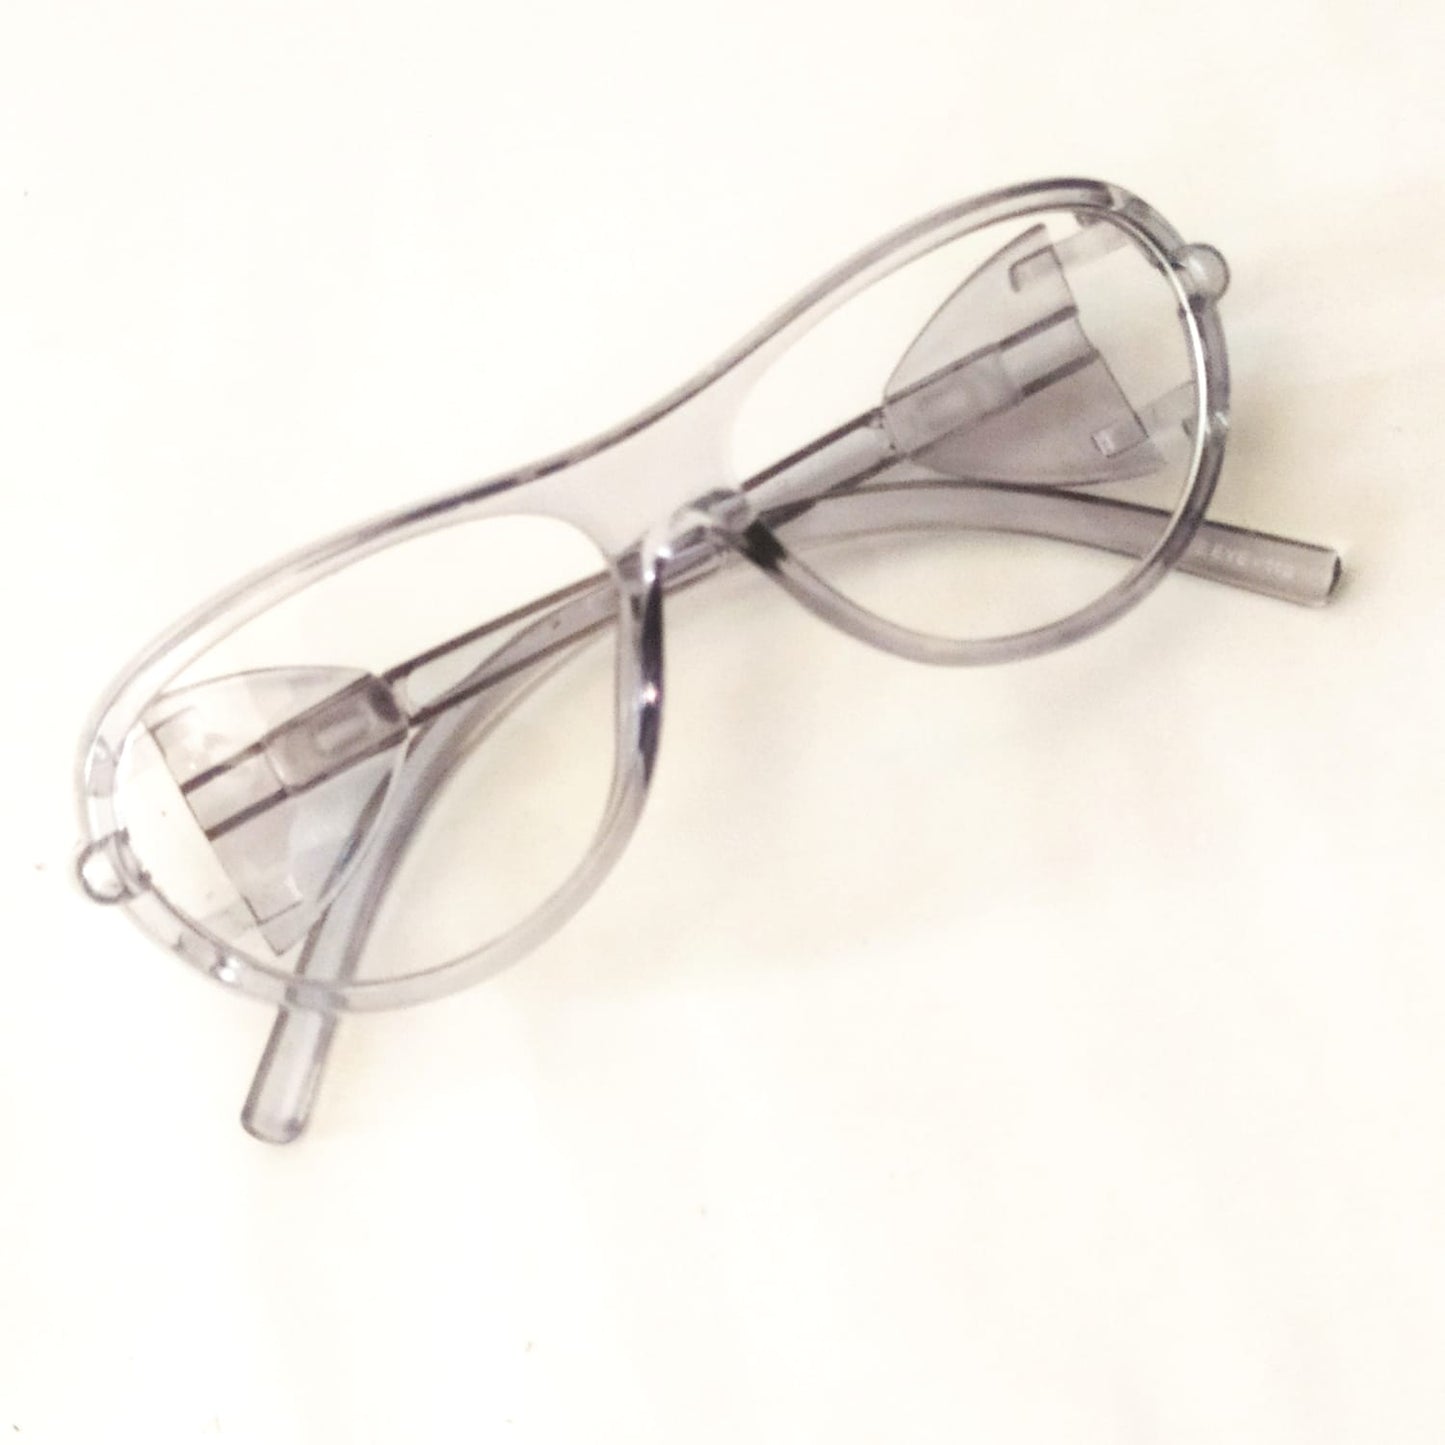 EYESafety Transparent Grey Prescription Safety Glasses